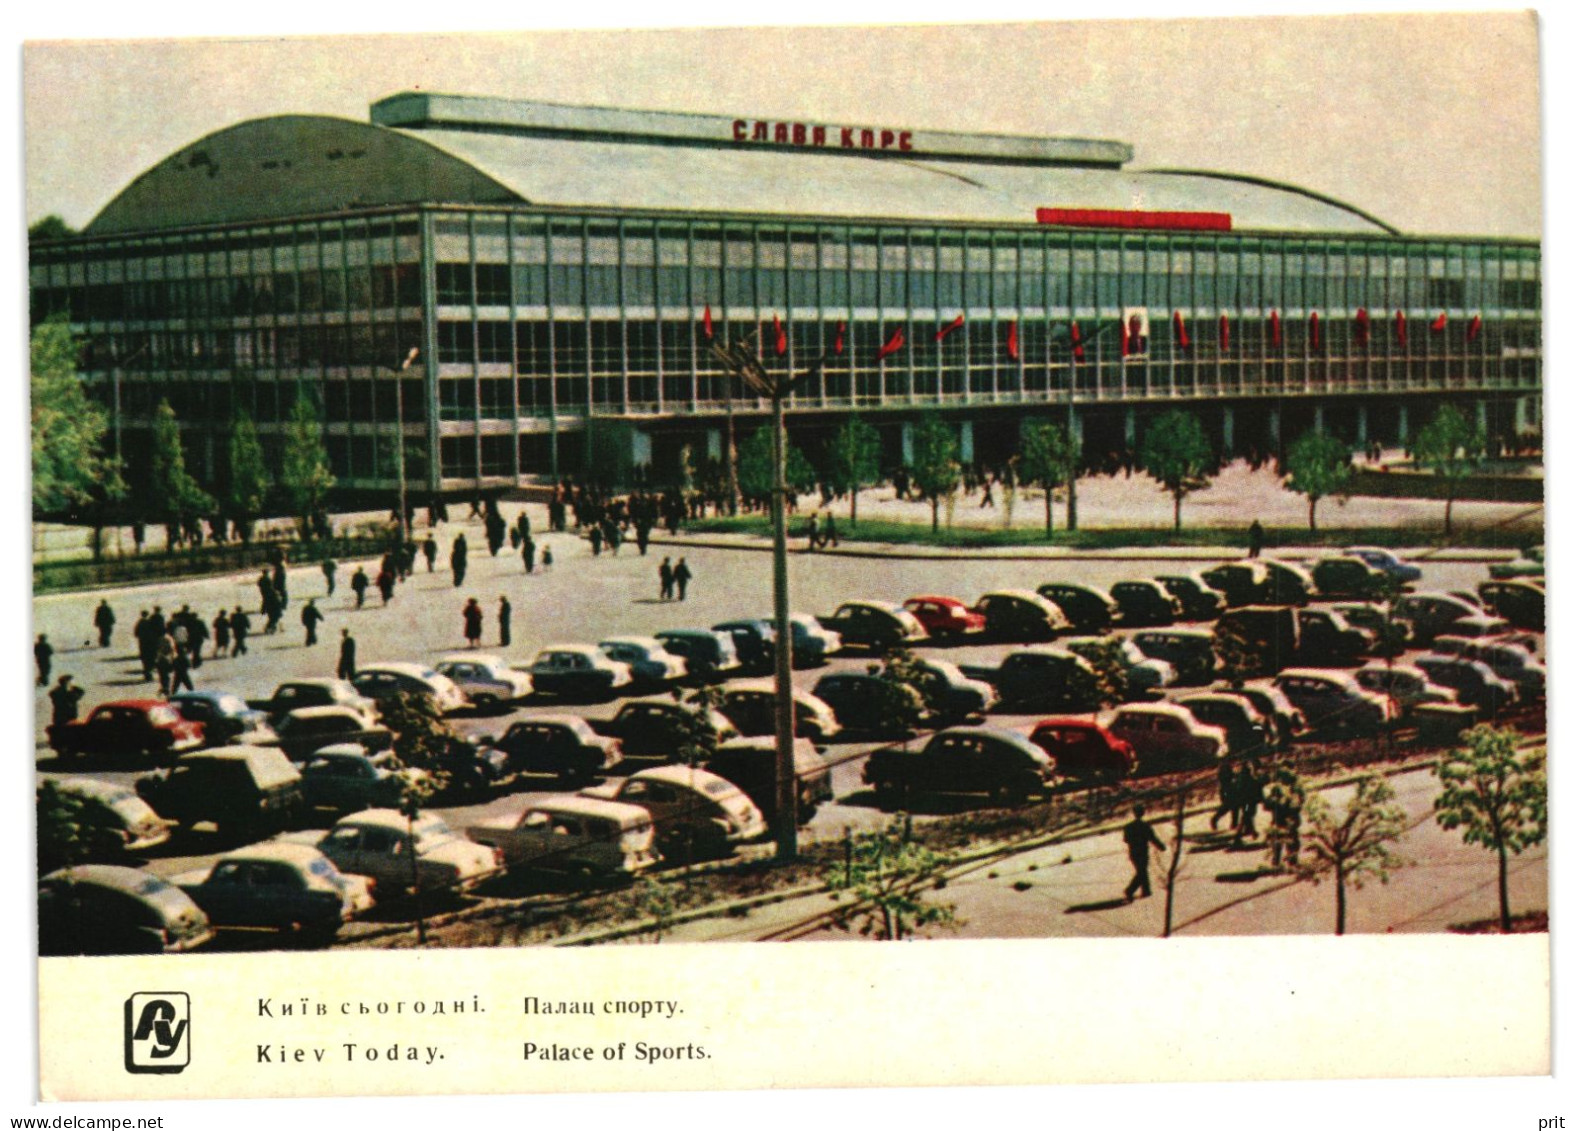 Palace Of Sports, Sport Hall Kyiv Soviet Ukraine USSR 1962 Unused Postcard Publisher Radyanska Ukraina, Kyiv - Ukraine